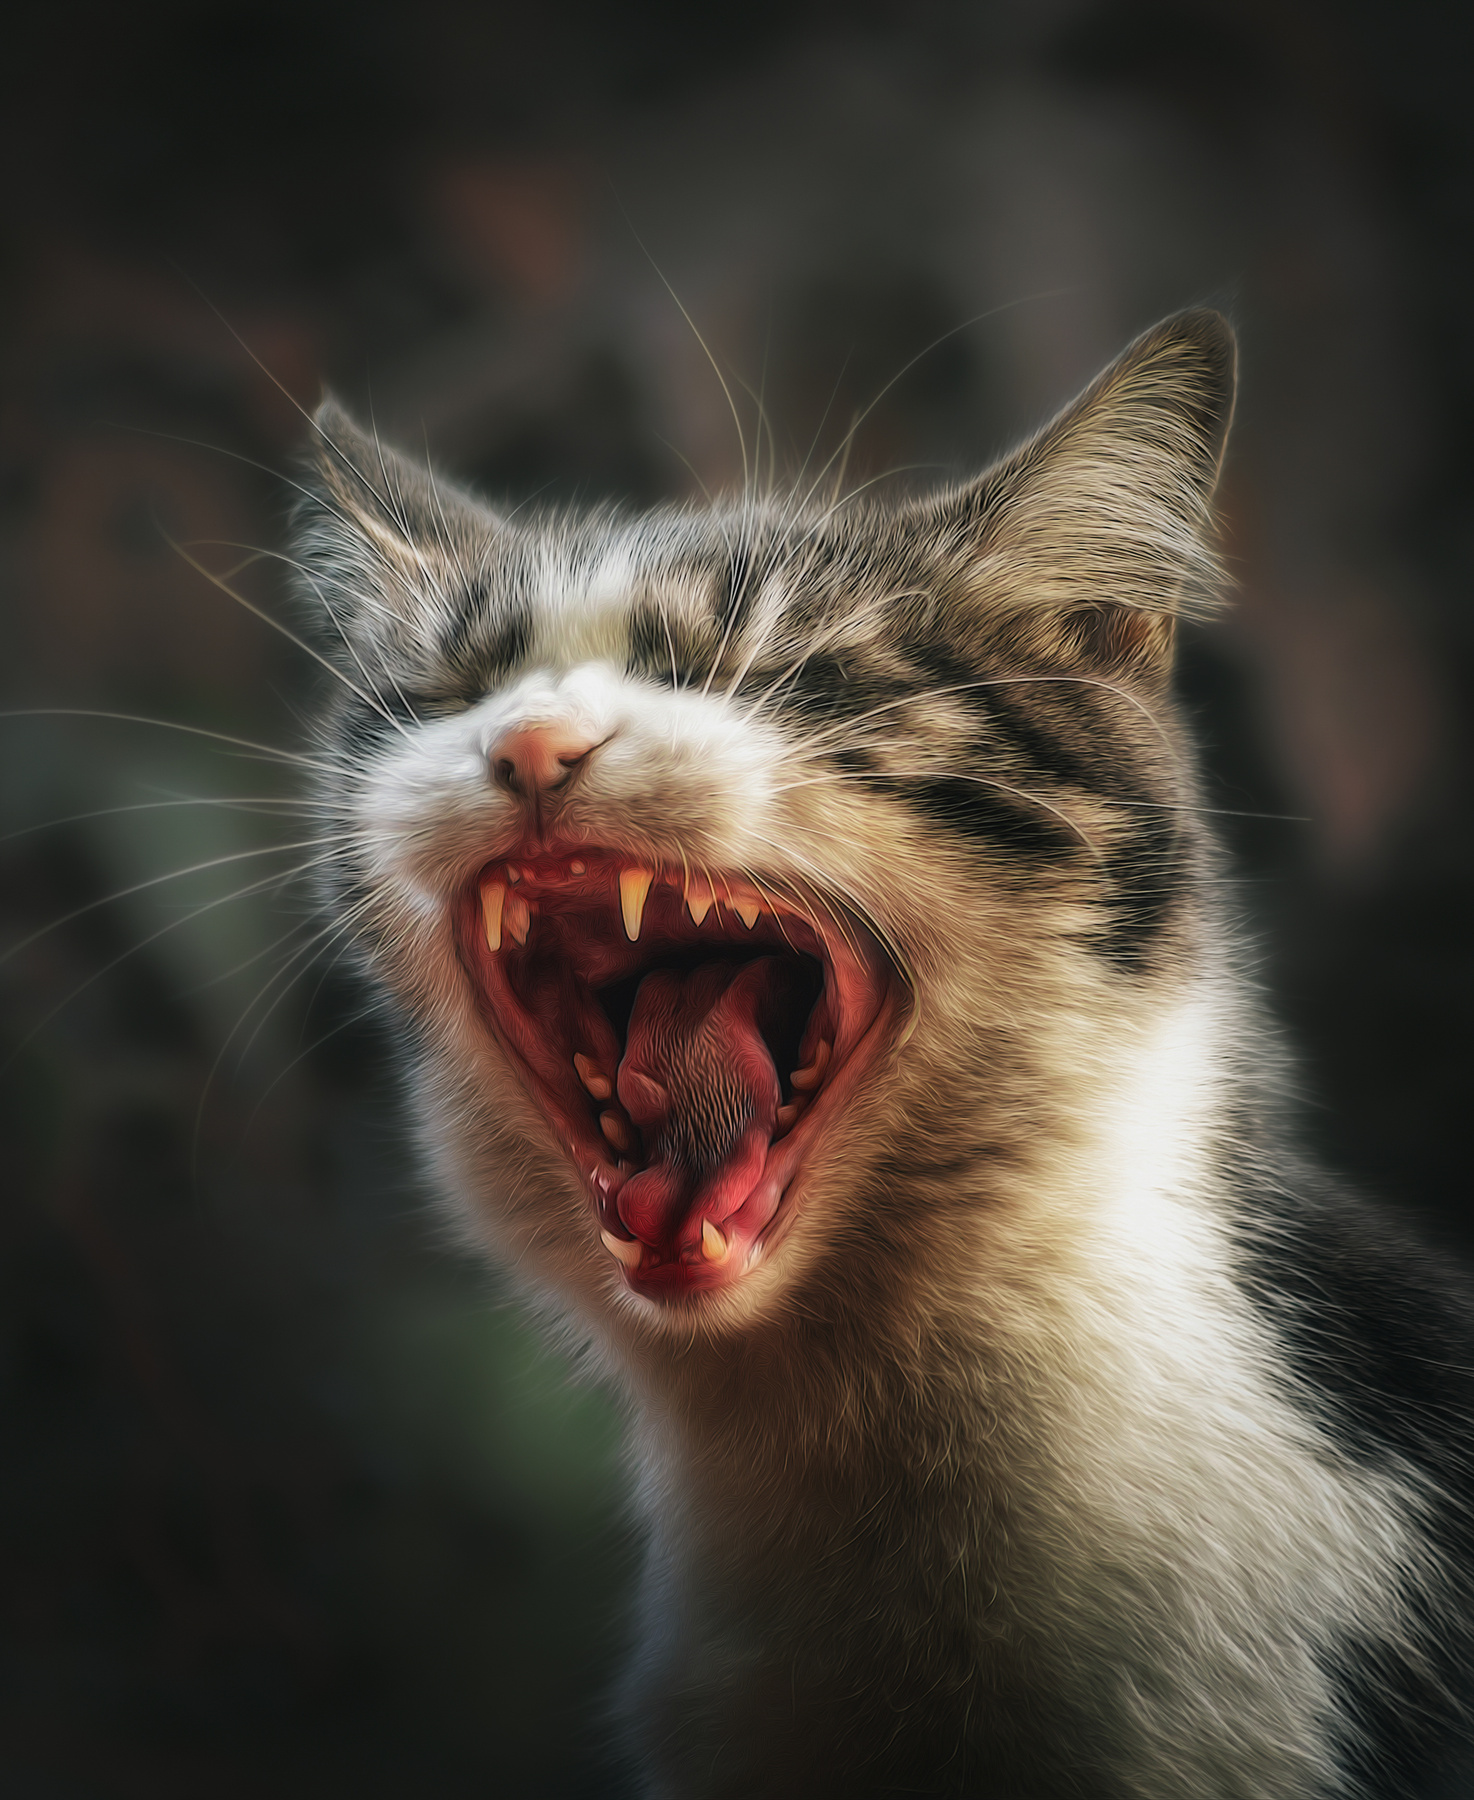 Пора на приём к стоматологу )) кошка осень портрет день животные фон боке